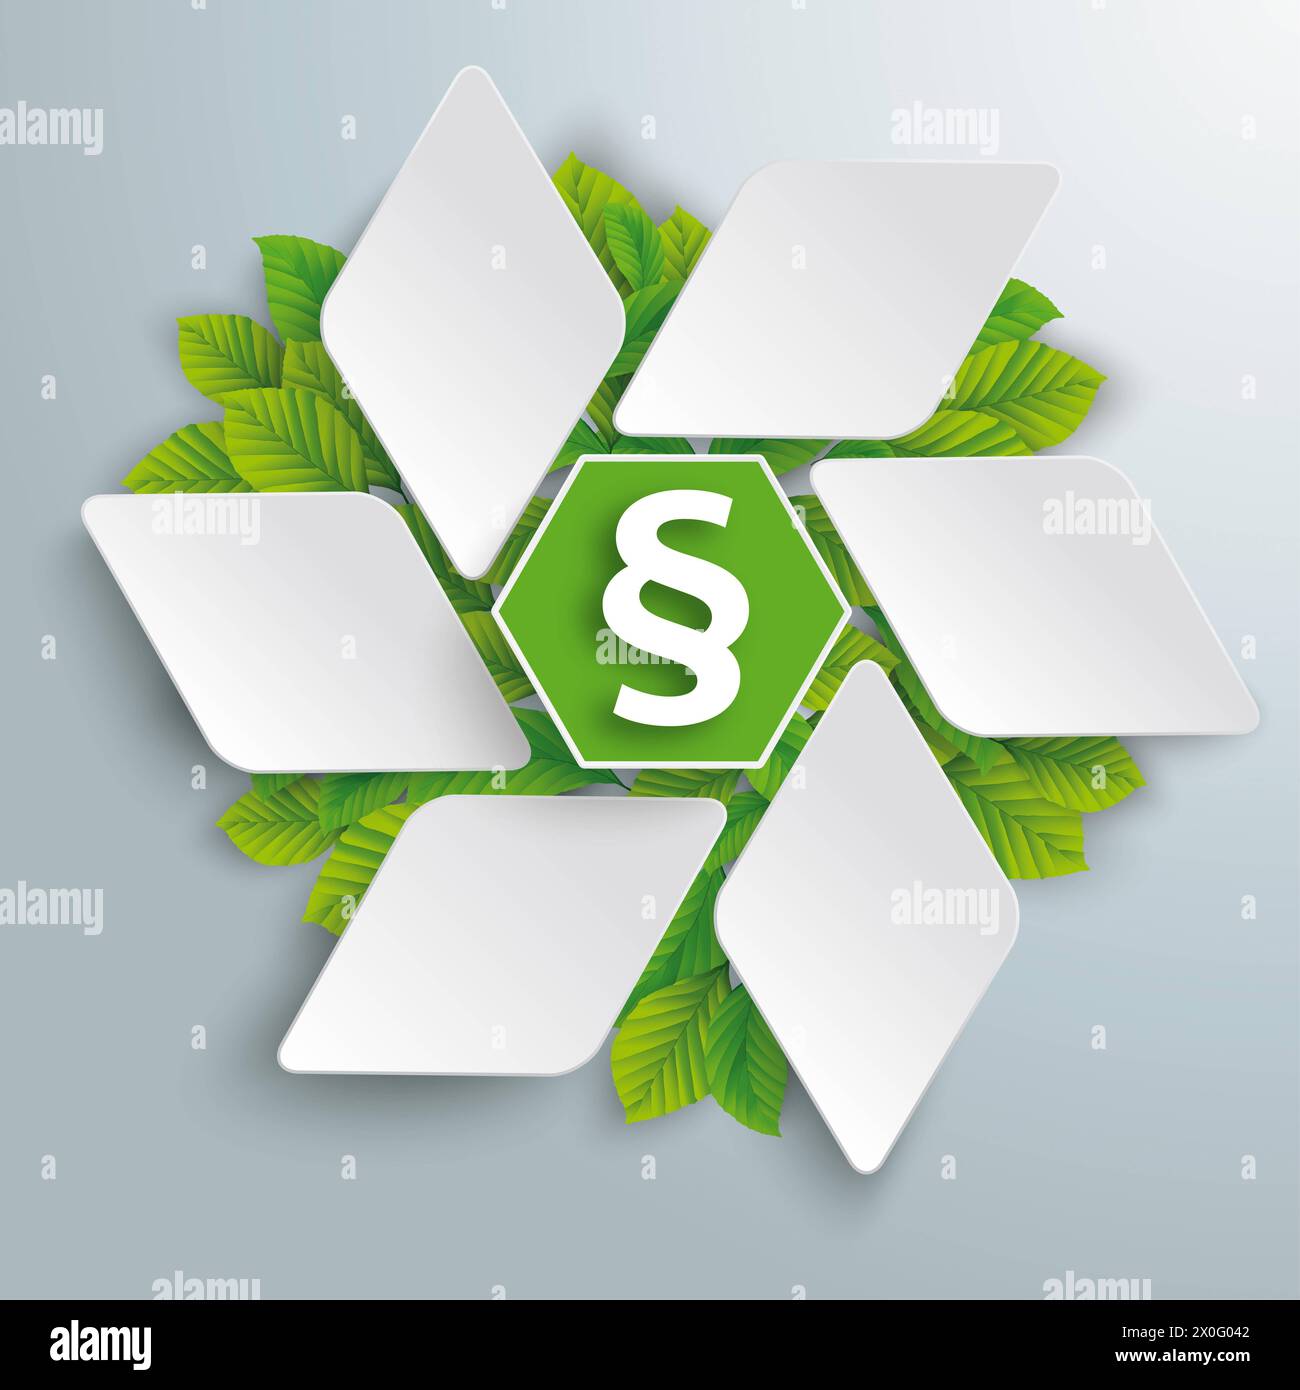 Losange hexagonal Eco Infographic feuilles vertes paragraphe Infographie avec étoile losange, paragraphe et feuilles vertes sur le fond gris. Banque D'Images